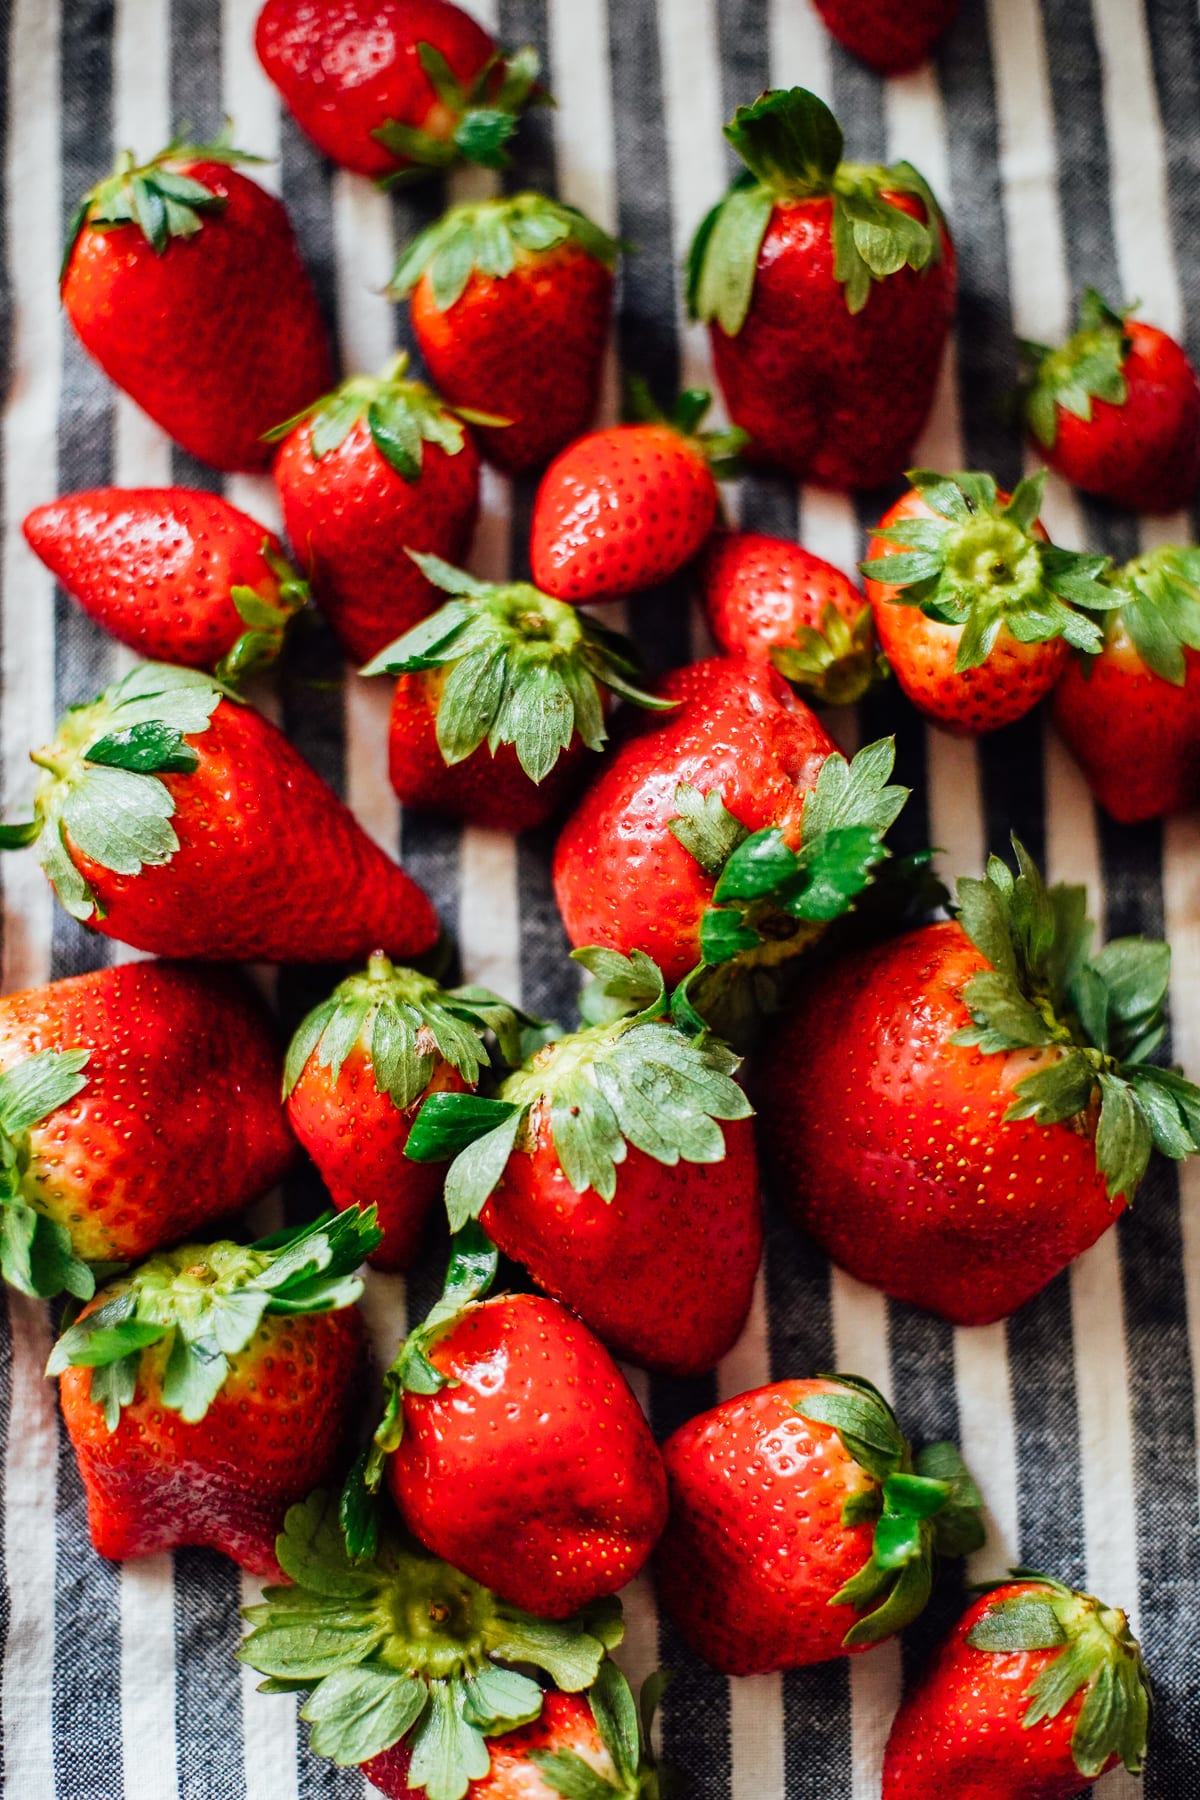 How to Keep Strawberries Fresh (& Make Berries Last Longer)